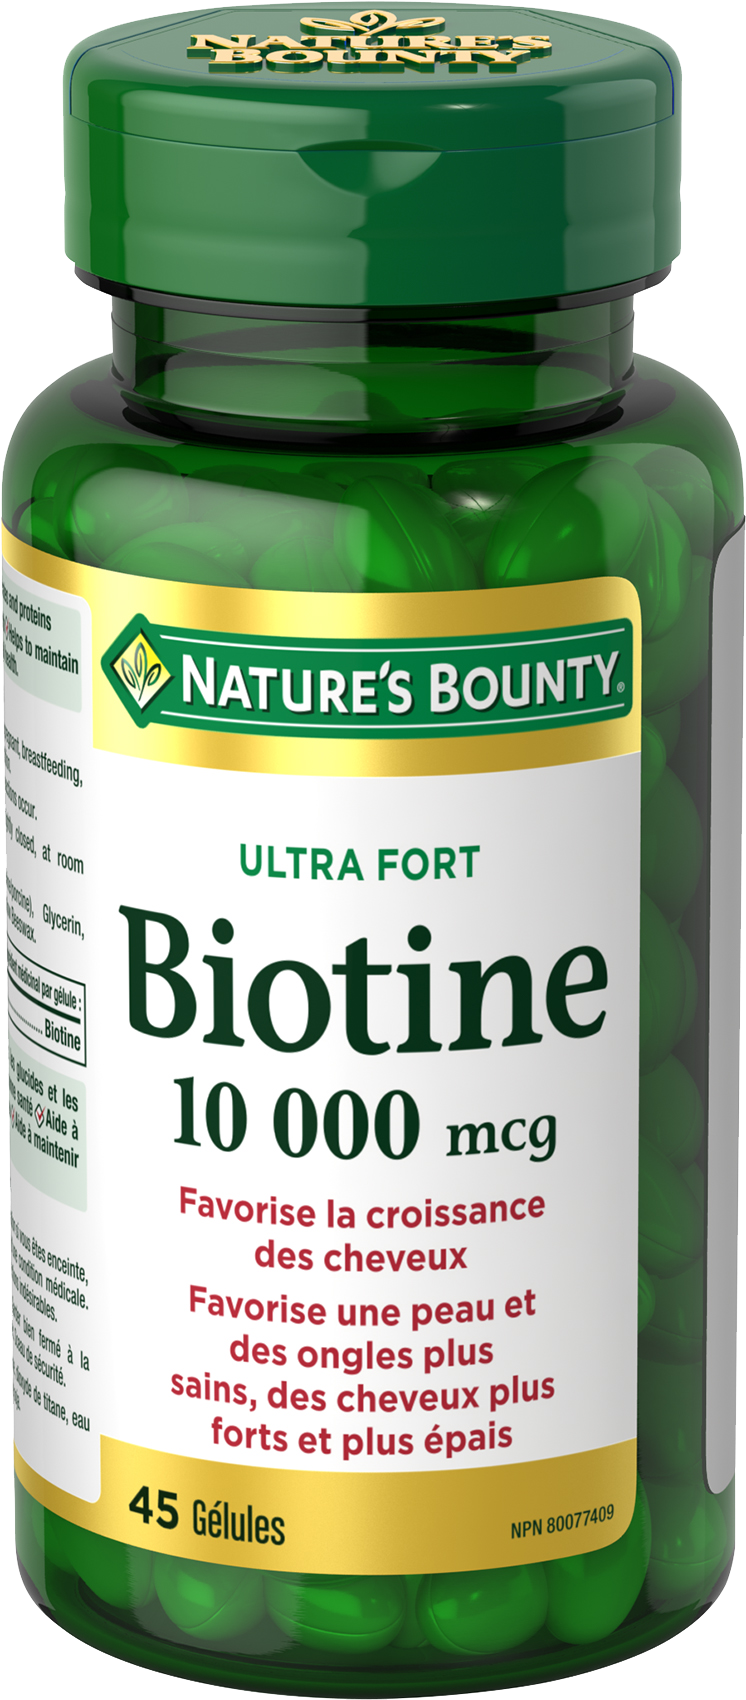 Biotine 10 000 mcg